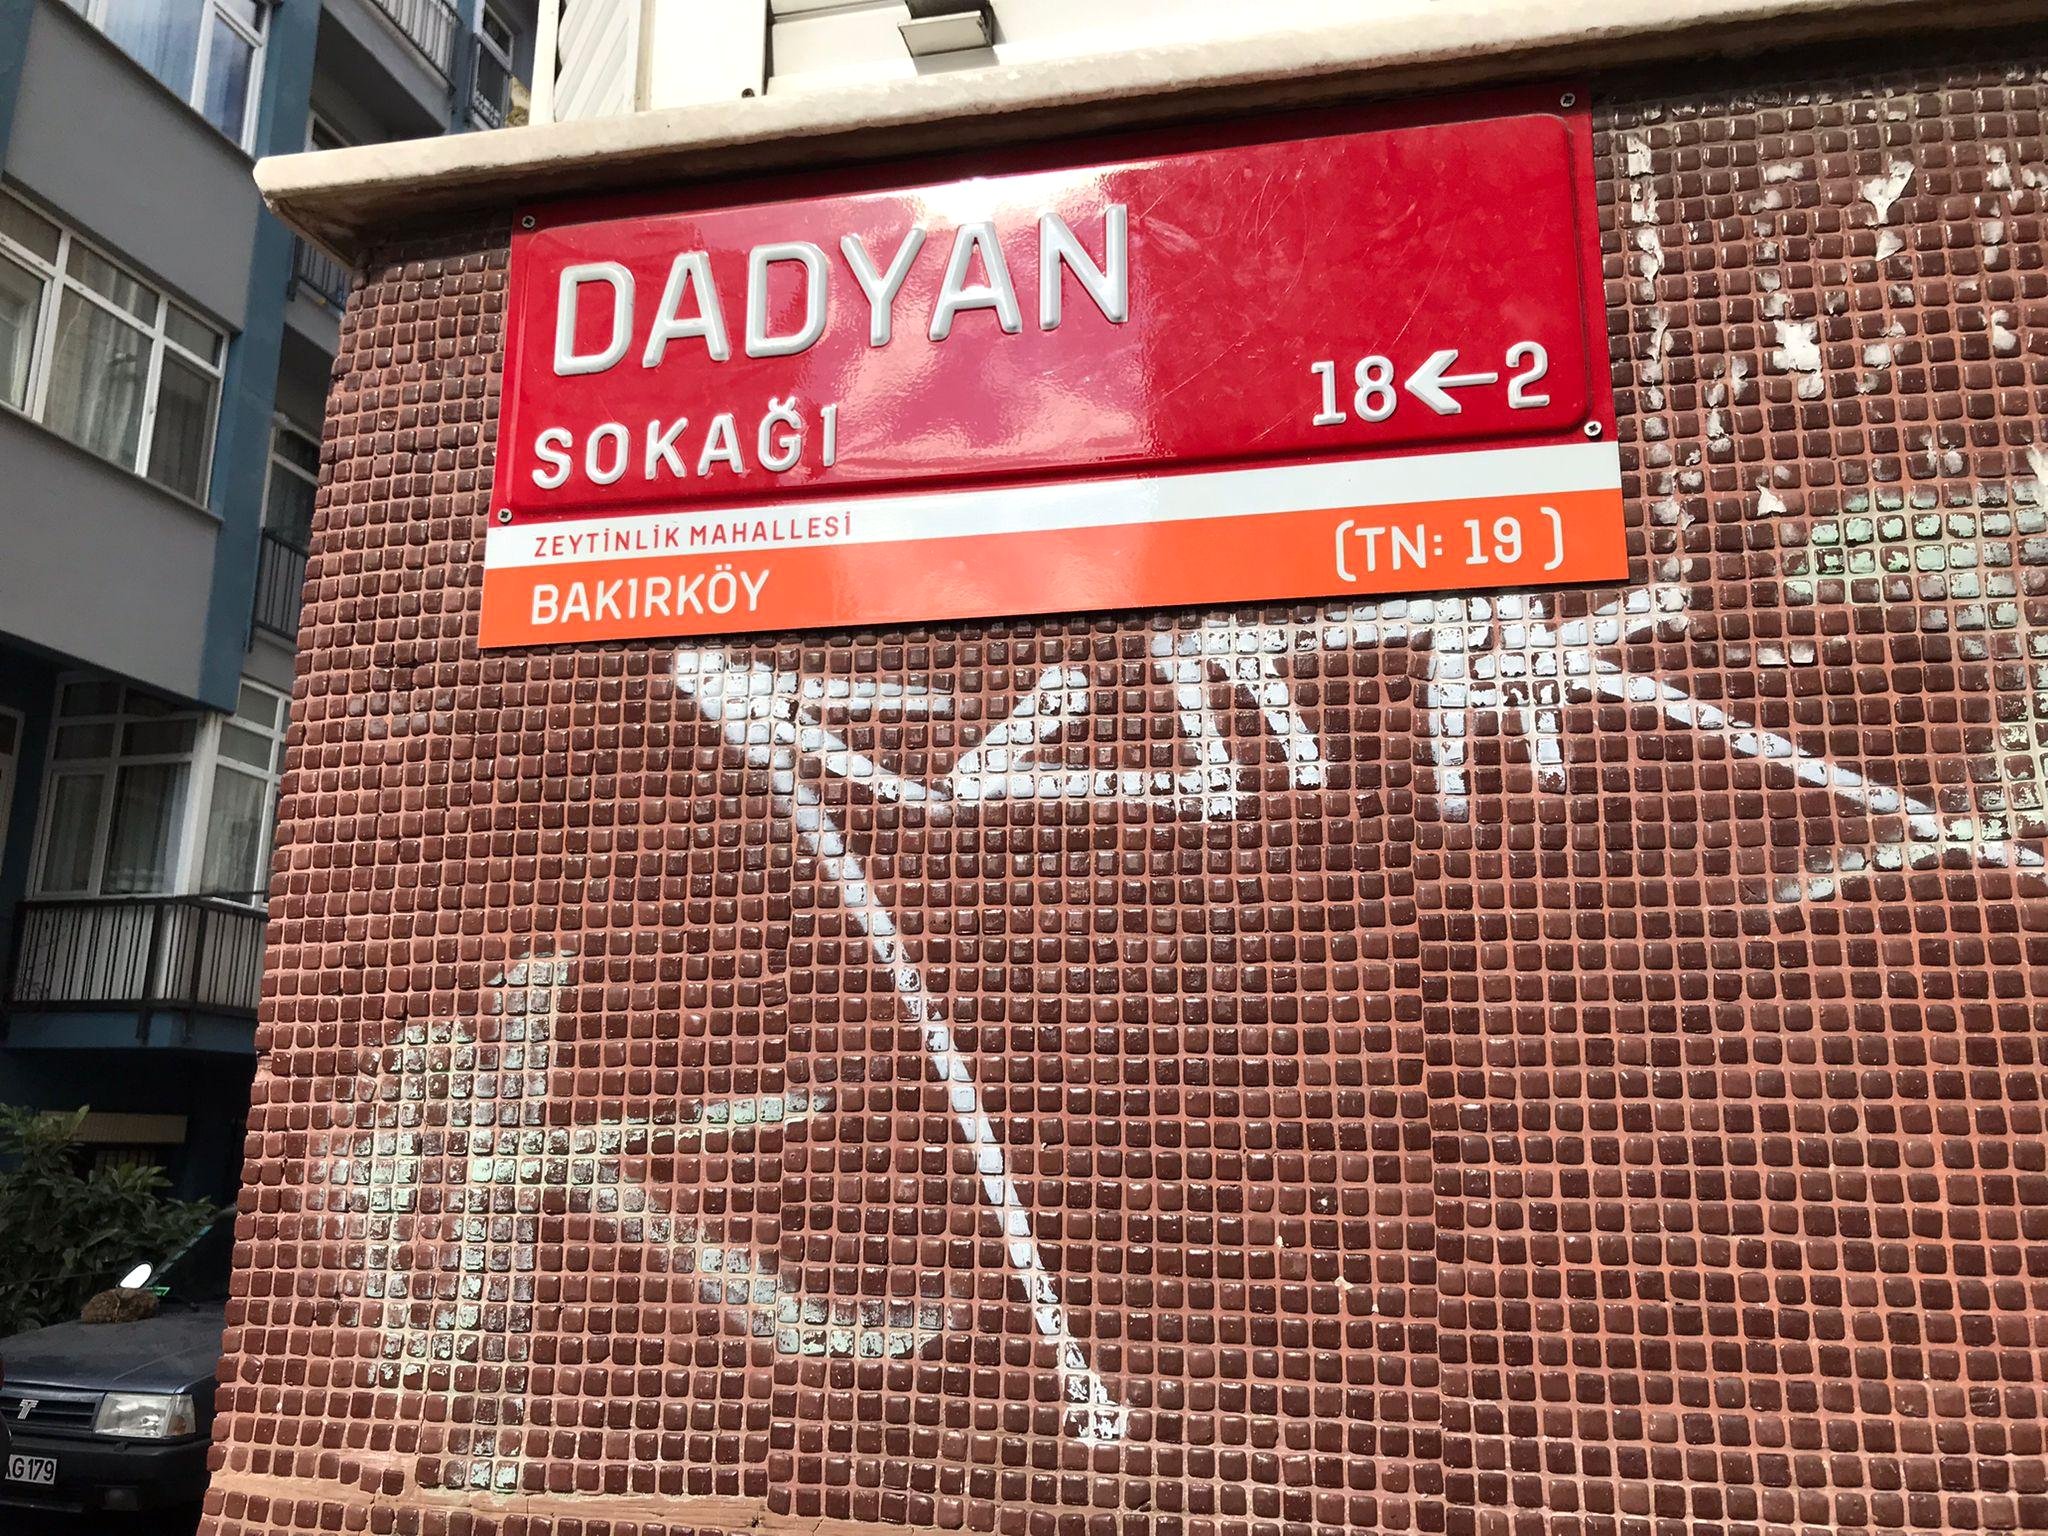 Ստամբուլի քաղաքապետարանը մերժում է փողոցներից մեկն վերանվանել օսմանյան բանակի հայազգի վառոդապետ Հովհաննես Տատյանի անունով